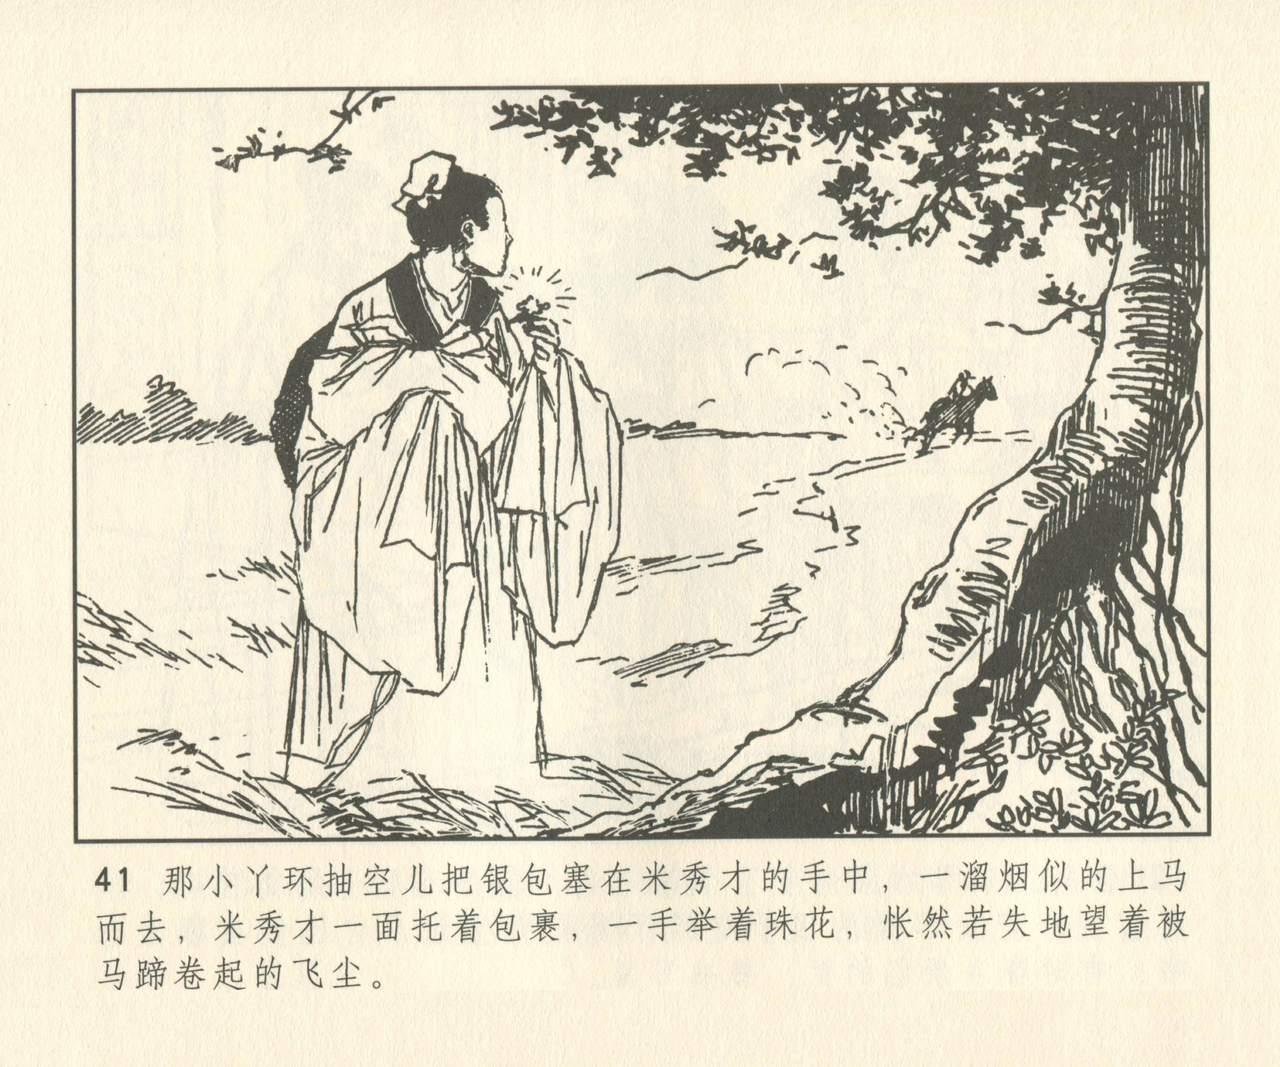 聊斋志异 张玮等绘 天津人民美术出版社 卷二十一 ~ 三十 169